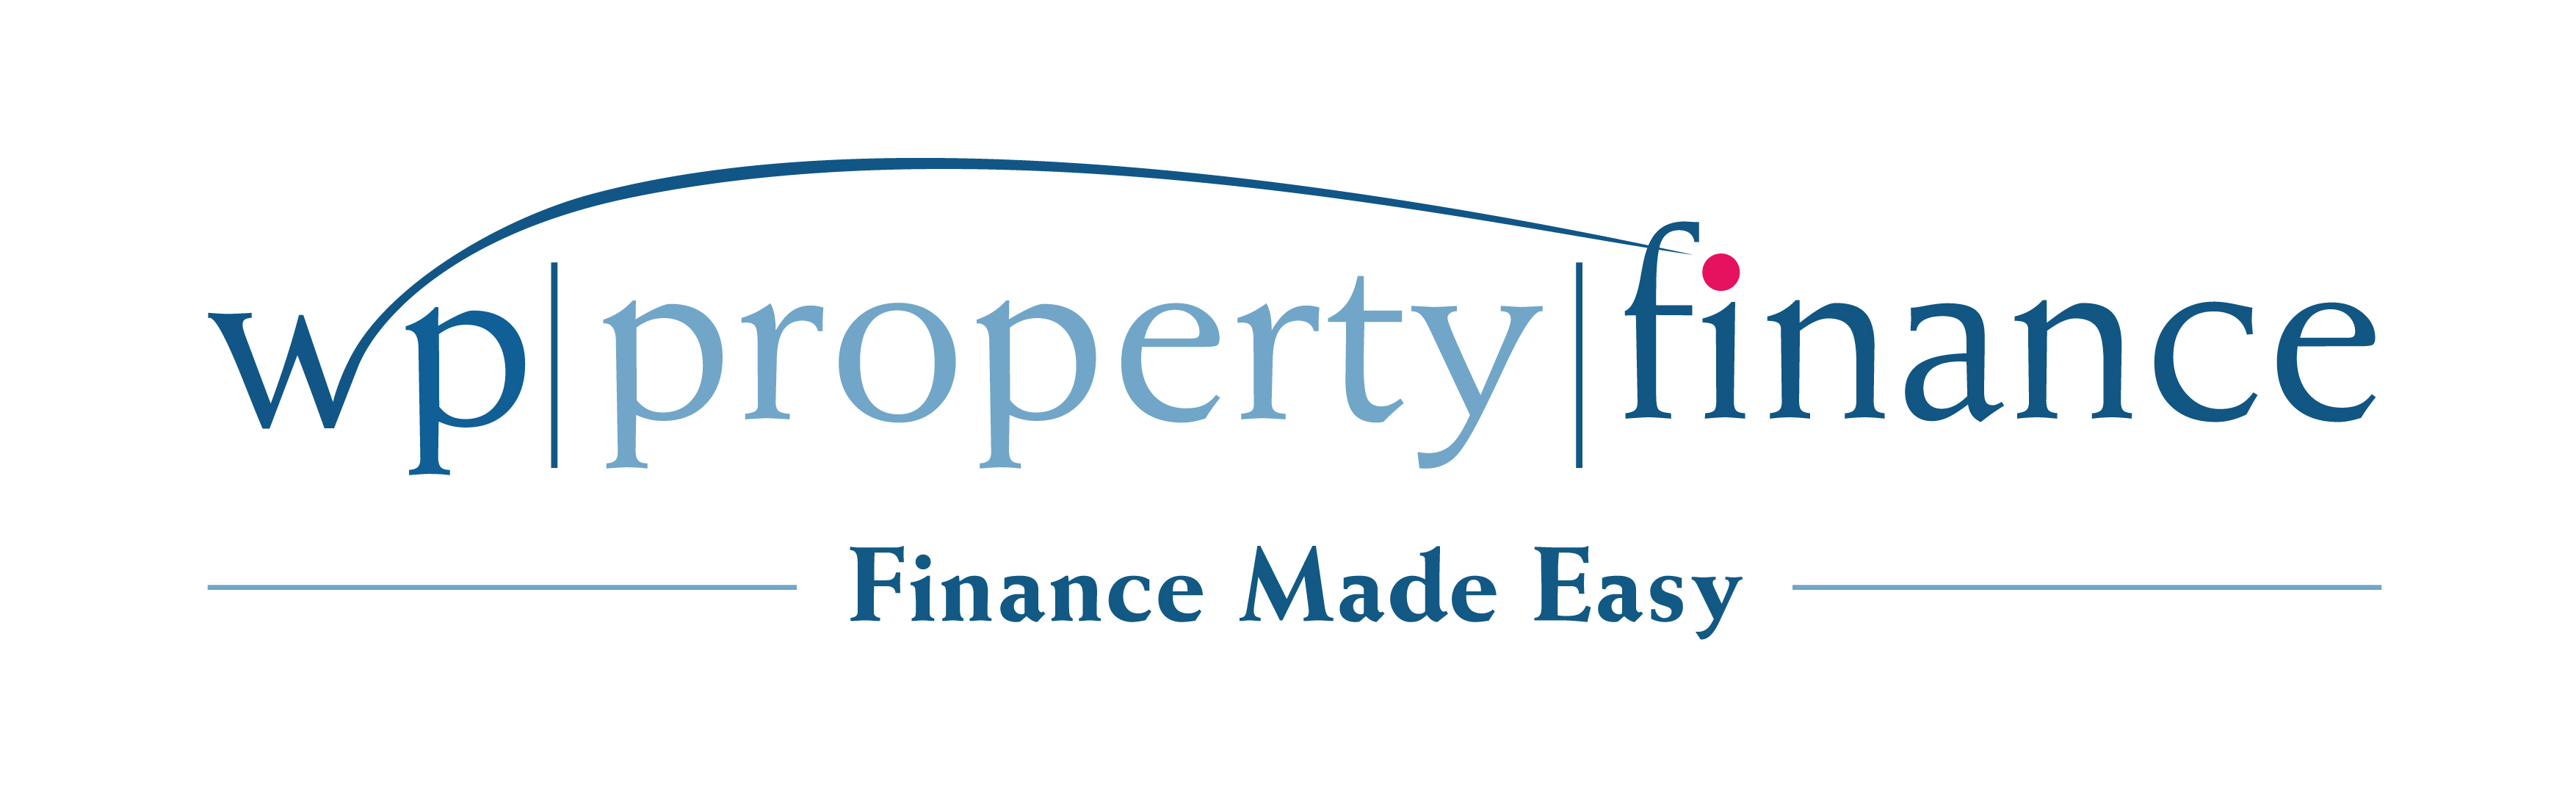 Positive Property Finance Logo